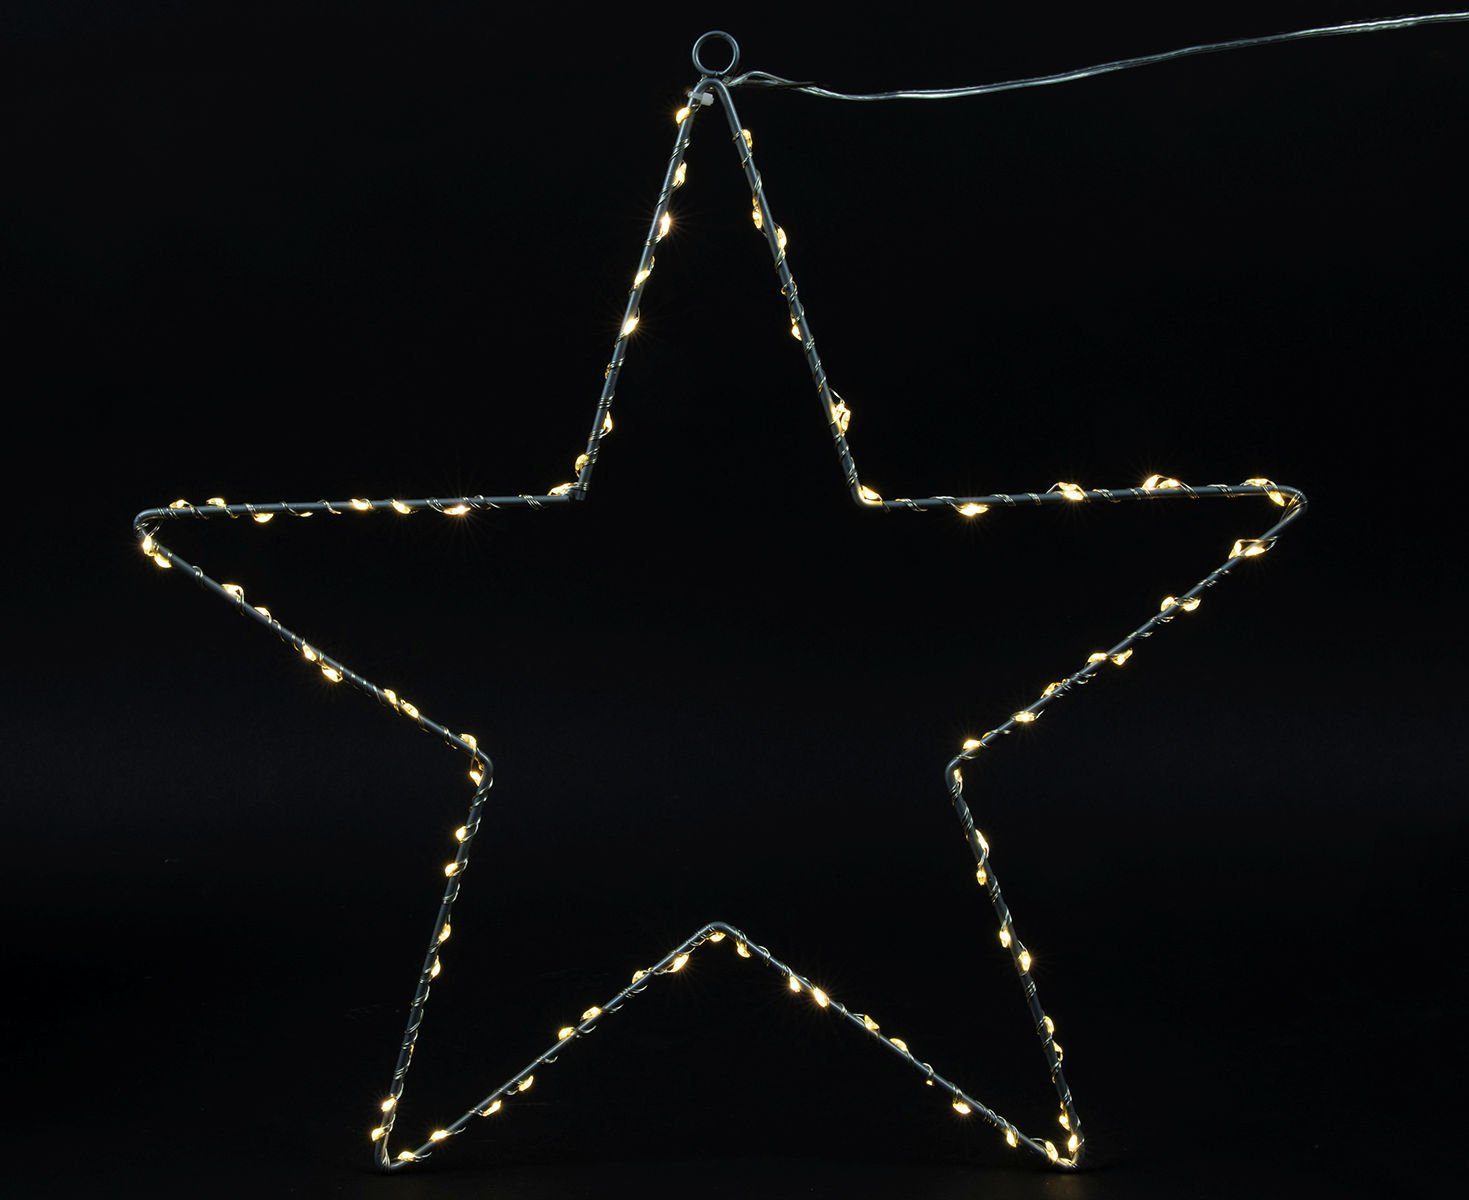 Spetebo Hängedekoration LED Fenster Silhouette Stern - 42 x 40 cm, Deko Weihnachts Beleuchtung mit Timer Funktion